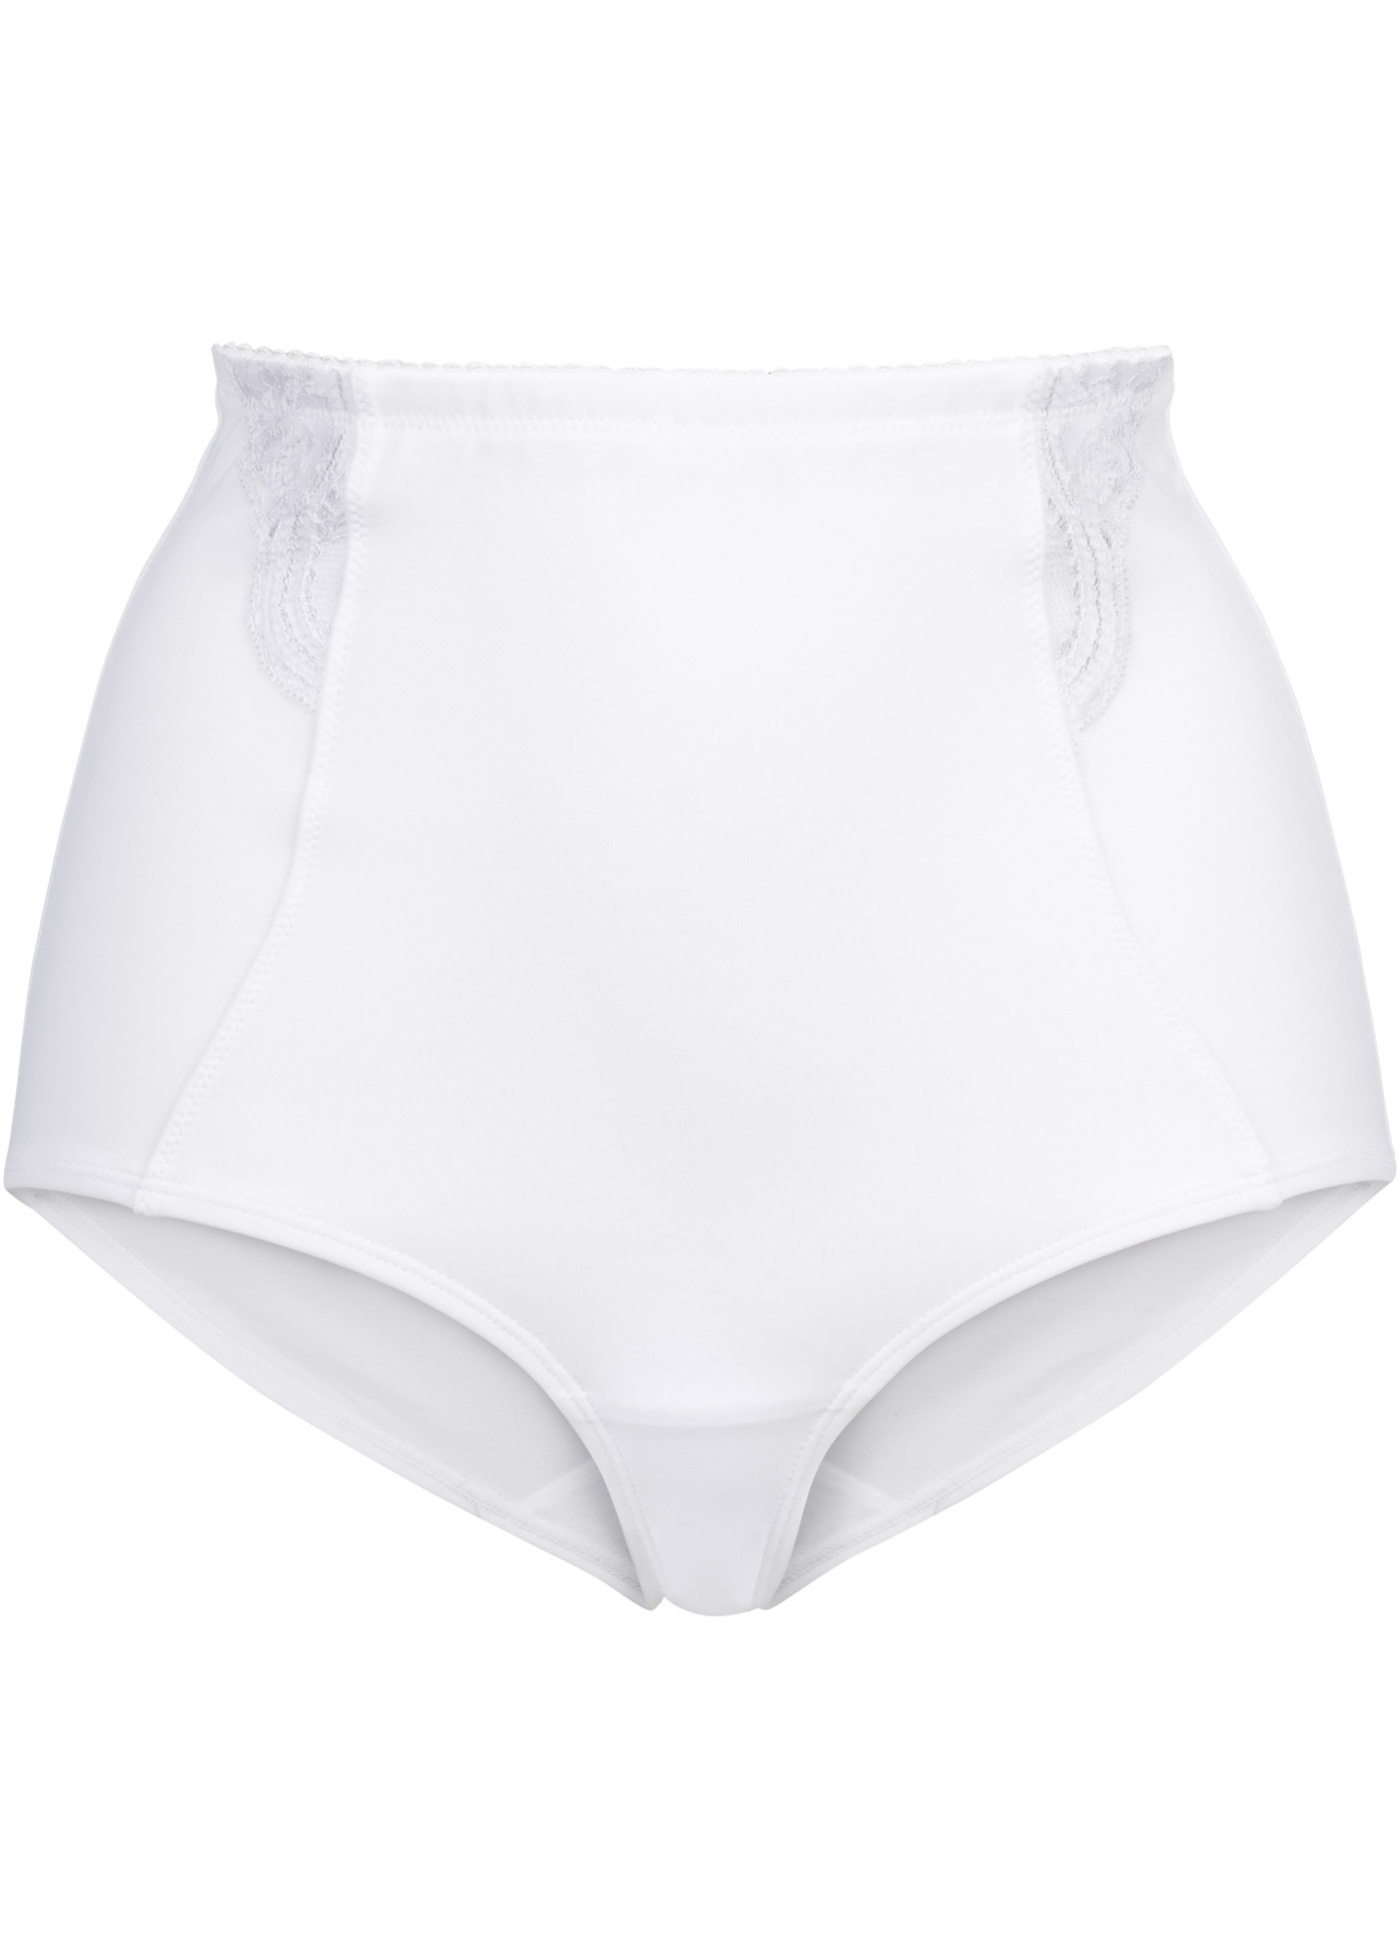 Culotte modellante livello forte (Bianco) - bpc bonprix collection - Nice Size